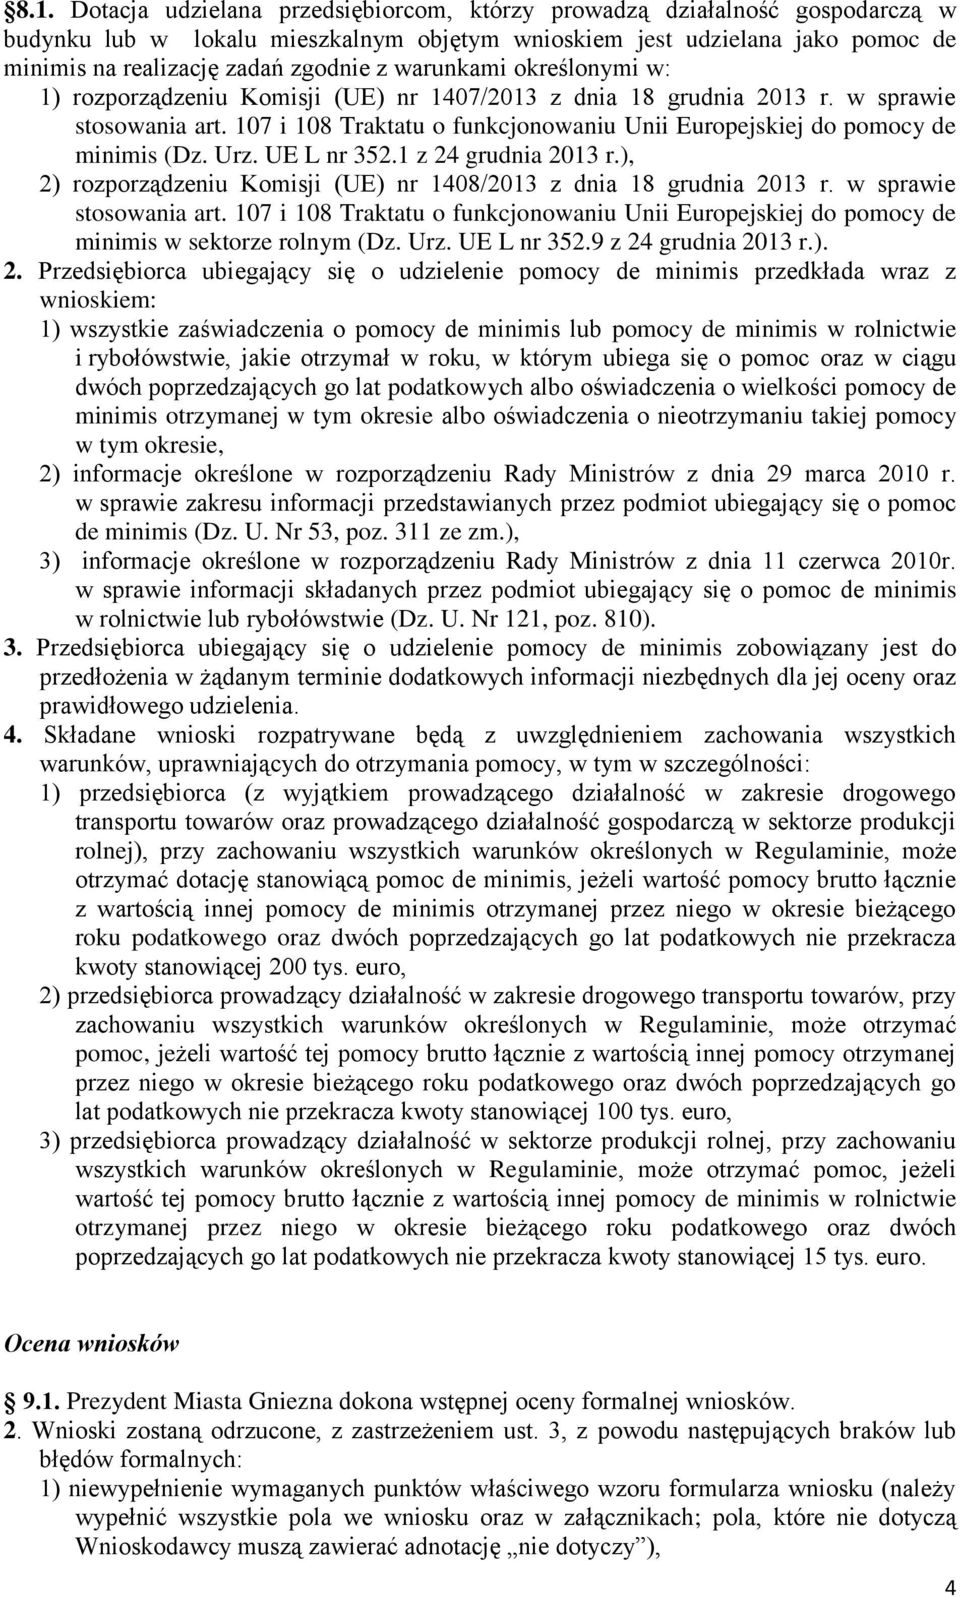 Urz. UE L nr 352.1 z 24 grudnia 2013 r.), 2) rozporządzeniu Komisji (UE) nr 1408/2013 z dnia 18 grudnia 2013 r. w sprawie stosowania art.